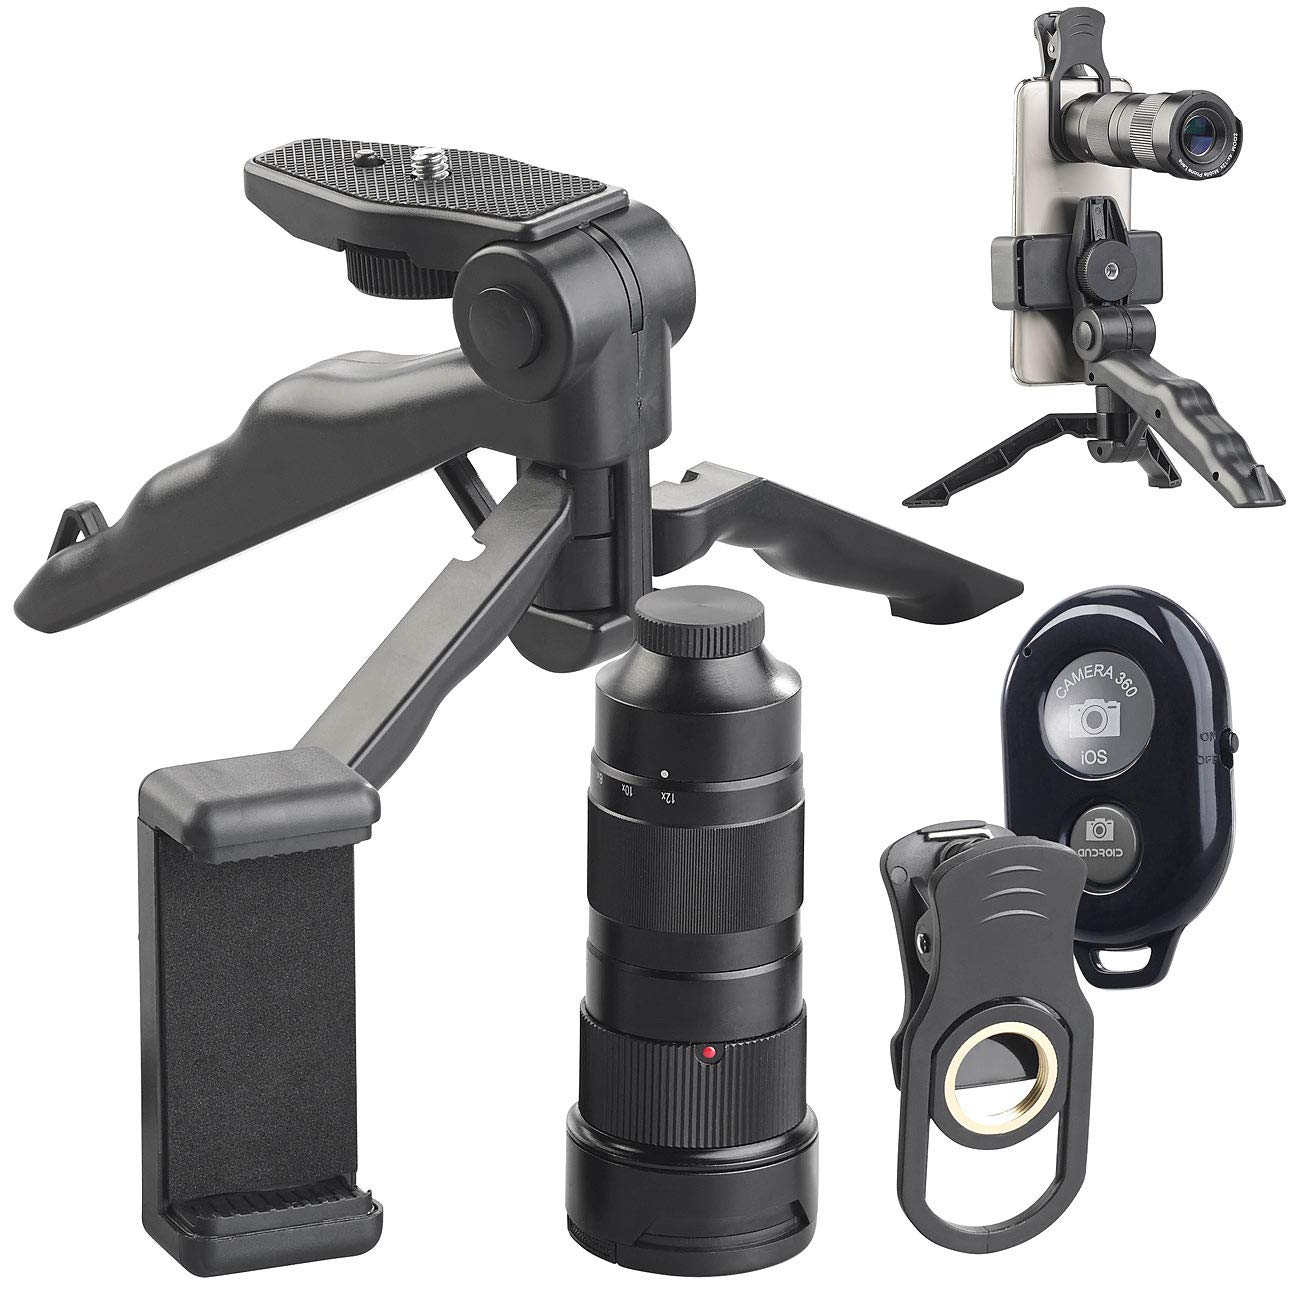 Somikon Teleobjektiv: Vorsatz-Tele-Objektiv 4X - 12x kompatibel mit Samsung, Stativ, Fernauslöser (Vorsatzlinse, Zoom-Objektiv Smartphone, Handy Objektive)